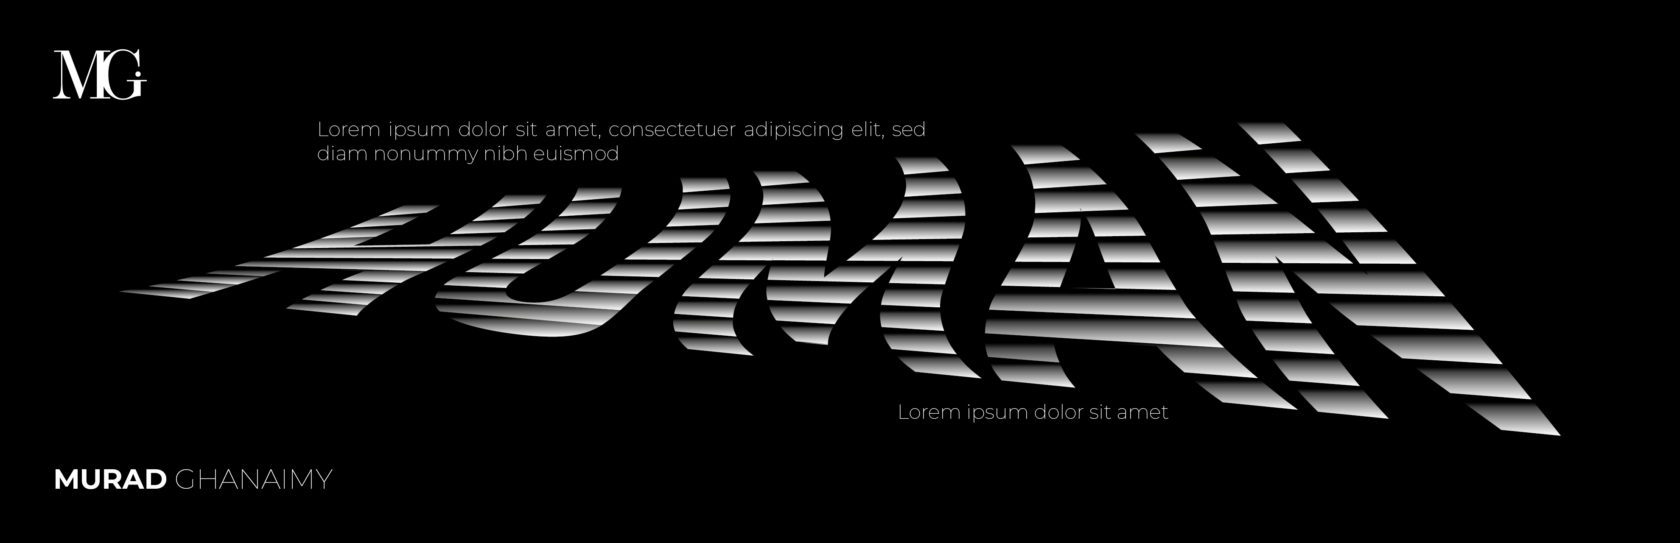 Murad-design-studio-designagentur-murad-ghanaimy-design-werbung-kreativ-typografie-kunst